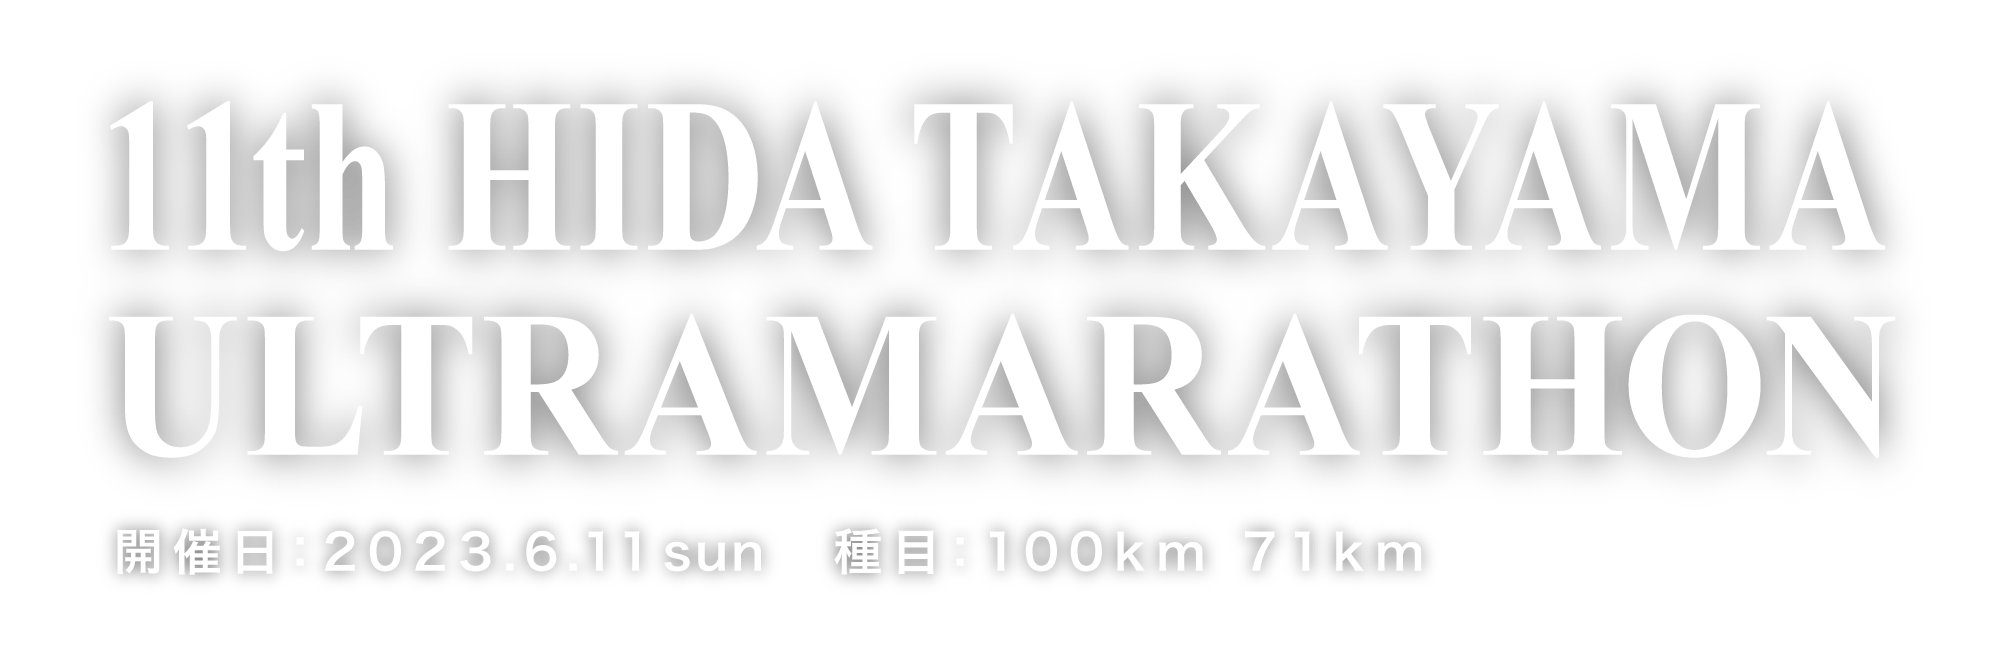 HIDA TAKAYAMA 100km ULTRAMARATHON 2023.06.11 Sun